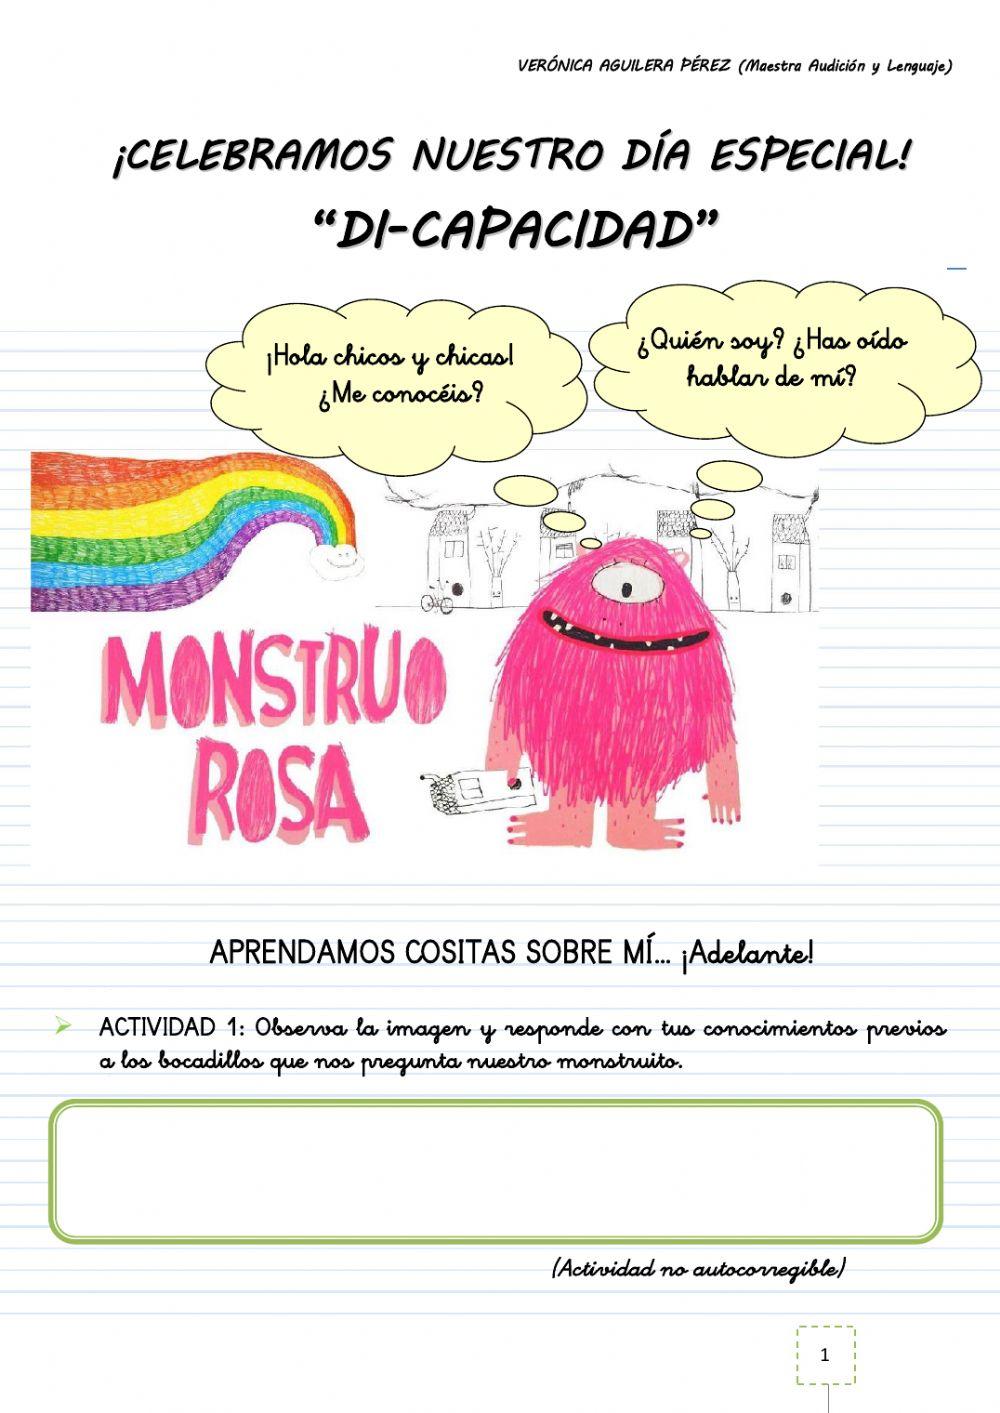 DIA INTERNACIONAL DE LA DISCAPACIDAD con -MONSTRUO ROSA- (VERÓNICA AGUILERA PÉREZ)